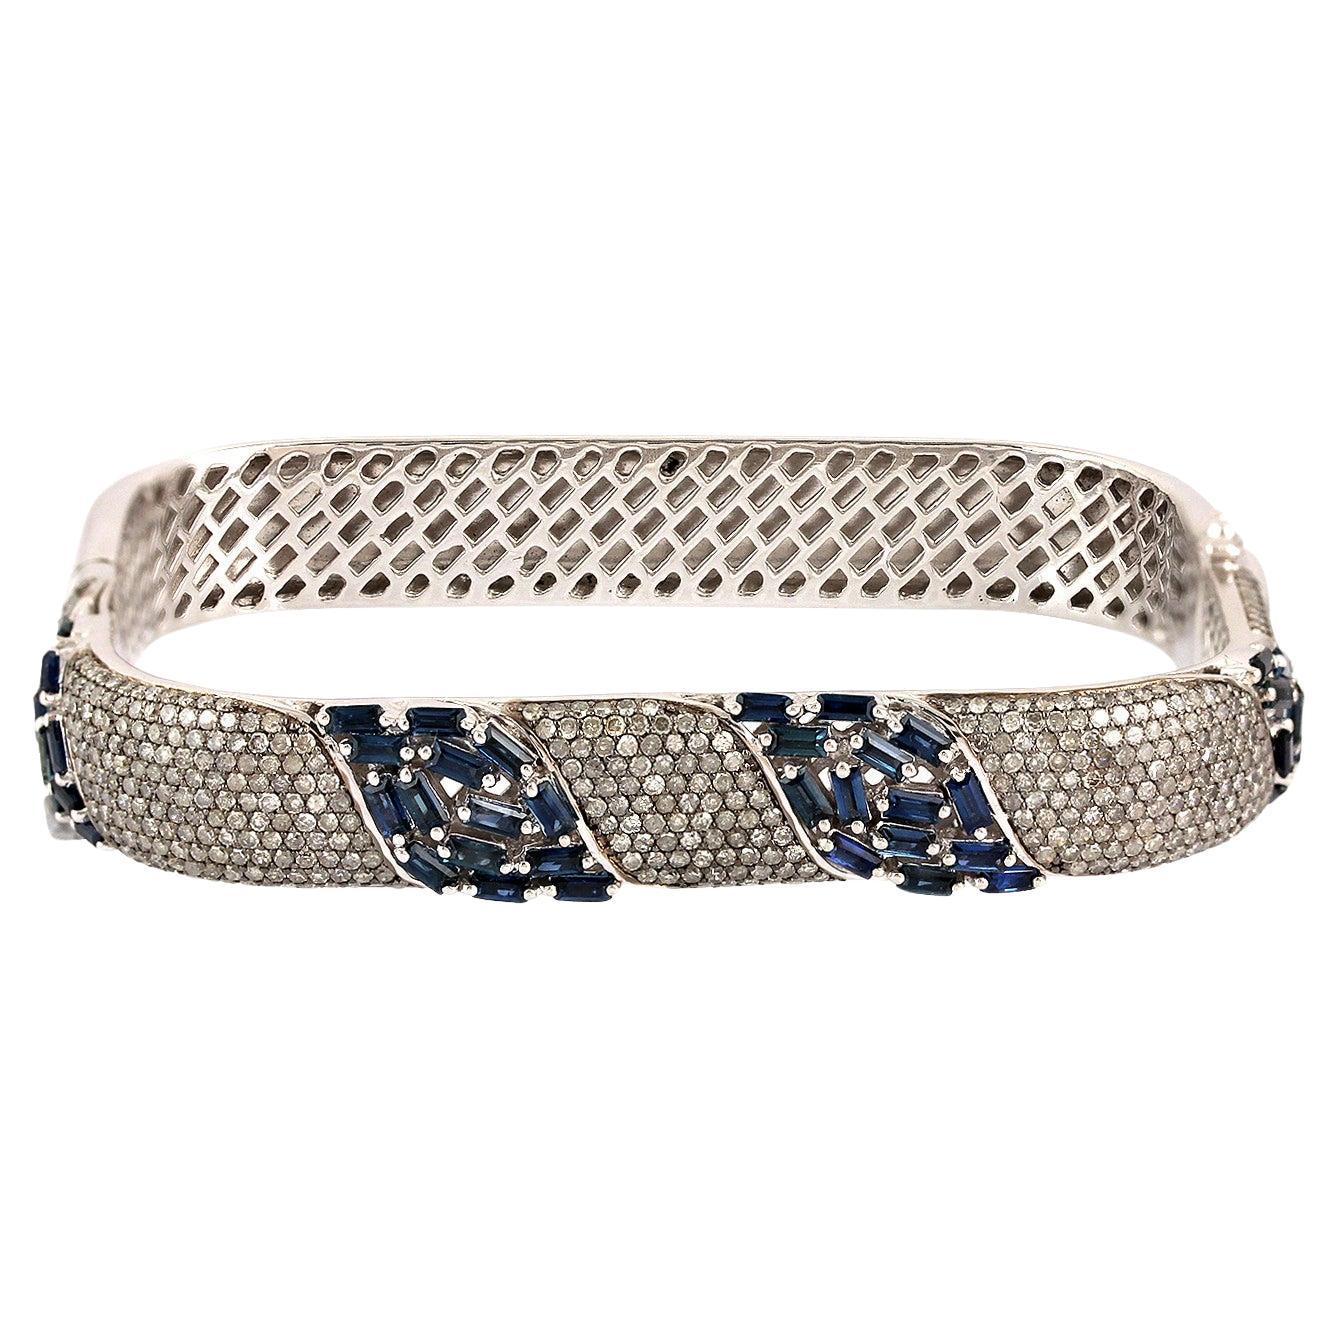 Blaue Saphir-Manschette in Kissenform mit Diamanten aus 18 Karat Gold und Silber